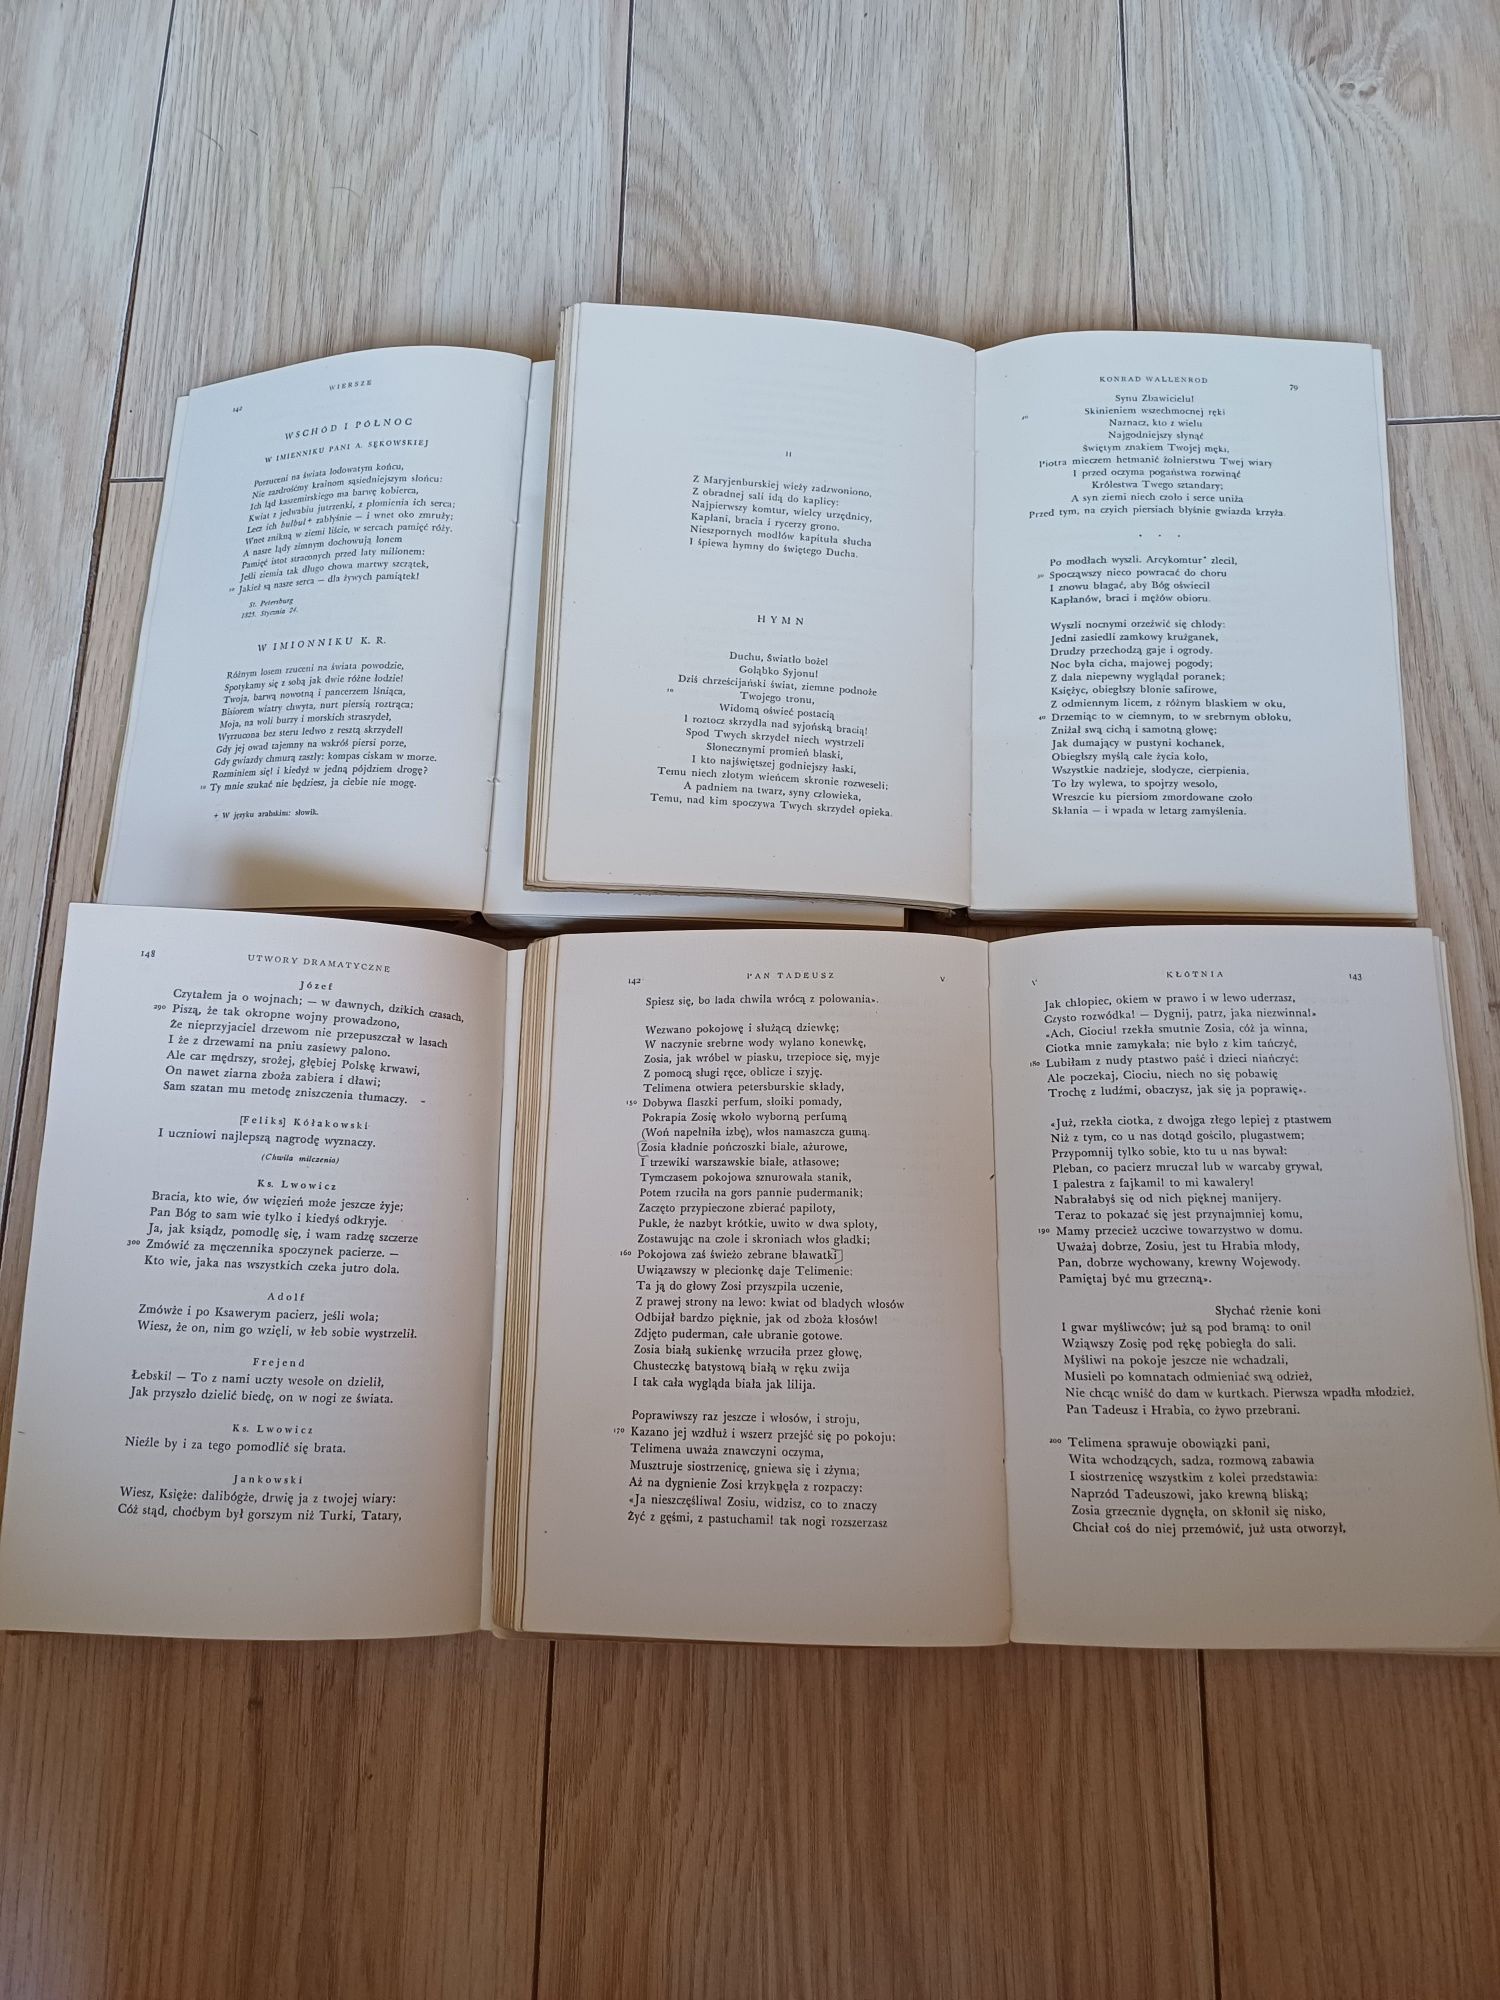 Adam Mickiewicz, Dzieła, tom I-IV; Wydanie Narodowe; rok wydania 1949